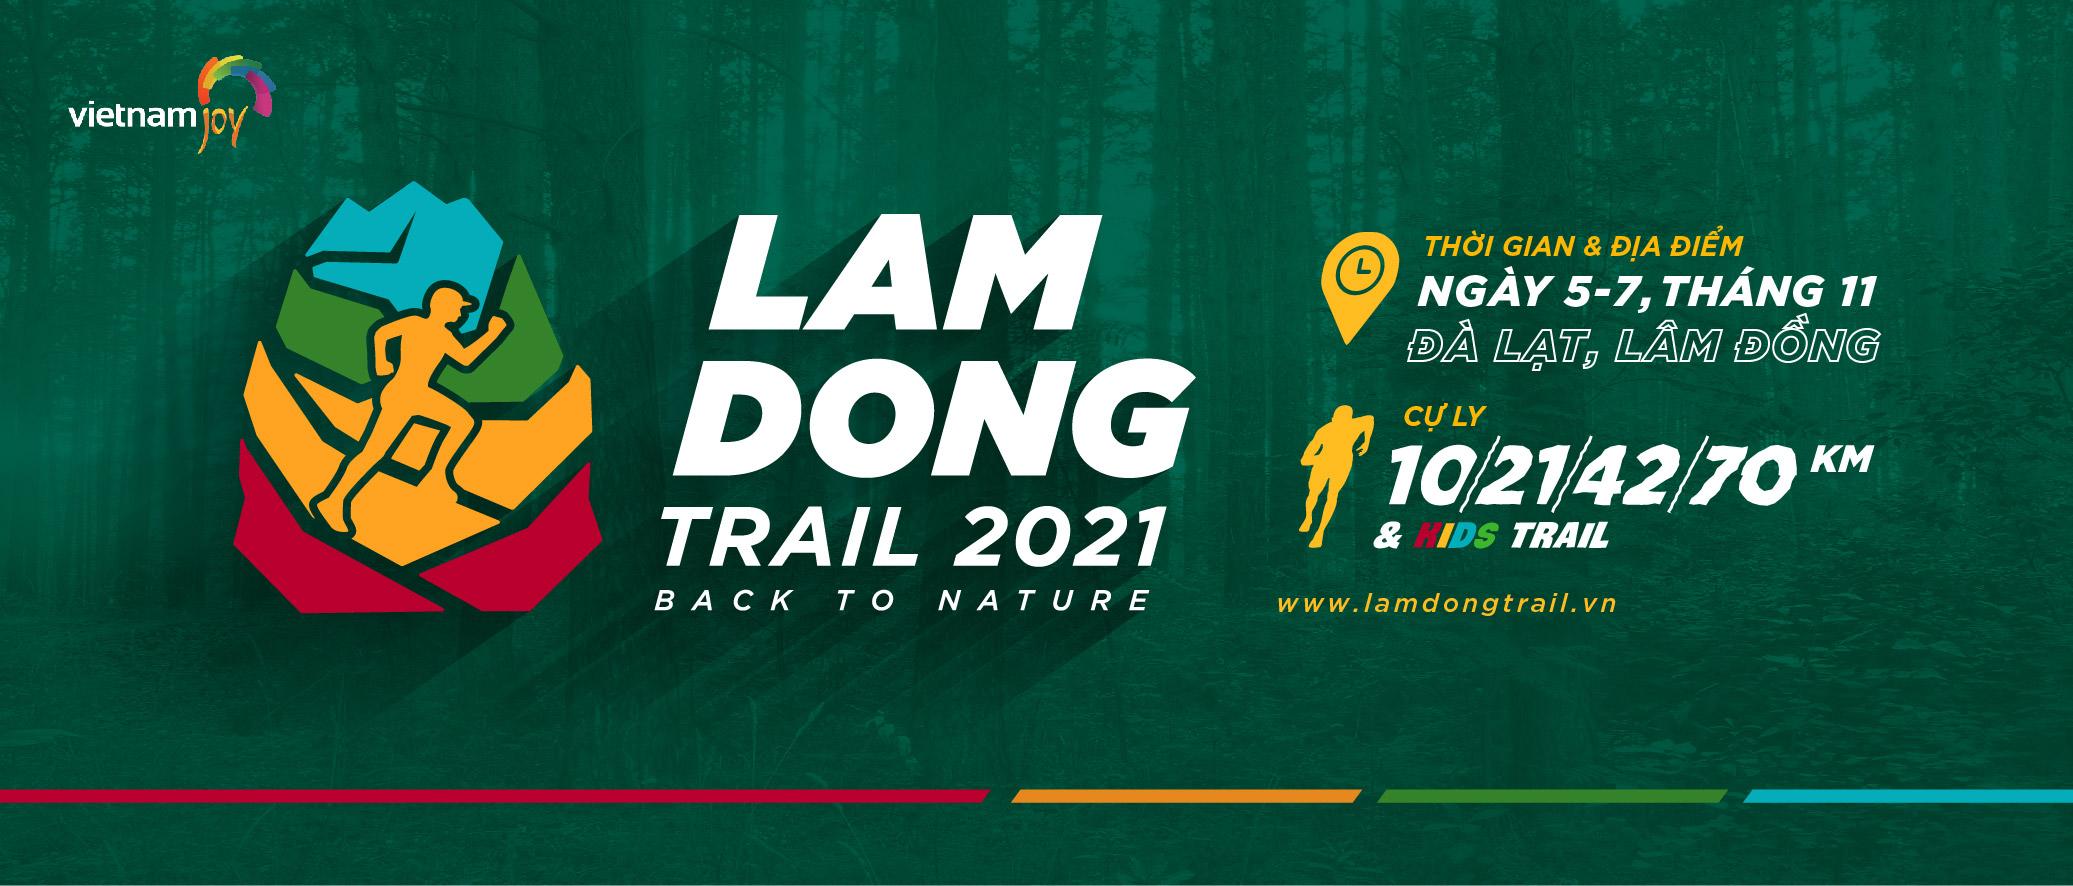 VIETNAM JOY LÂM ĐỒNG TRAIL 2021